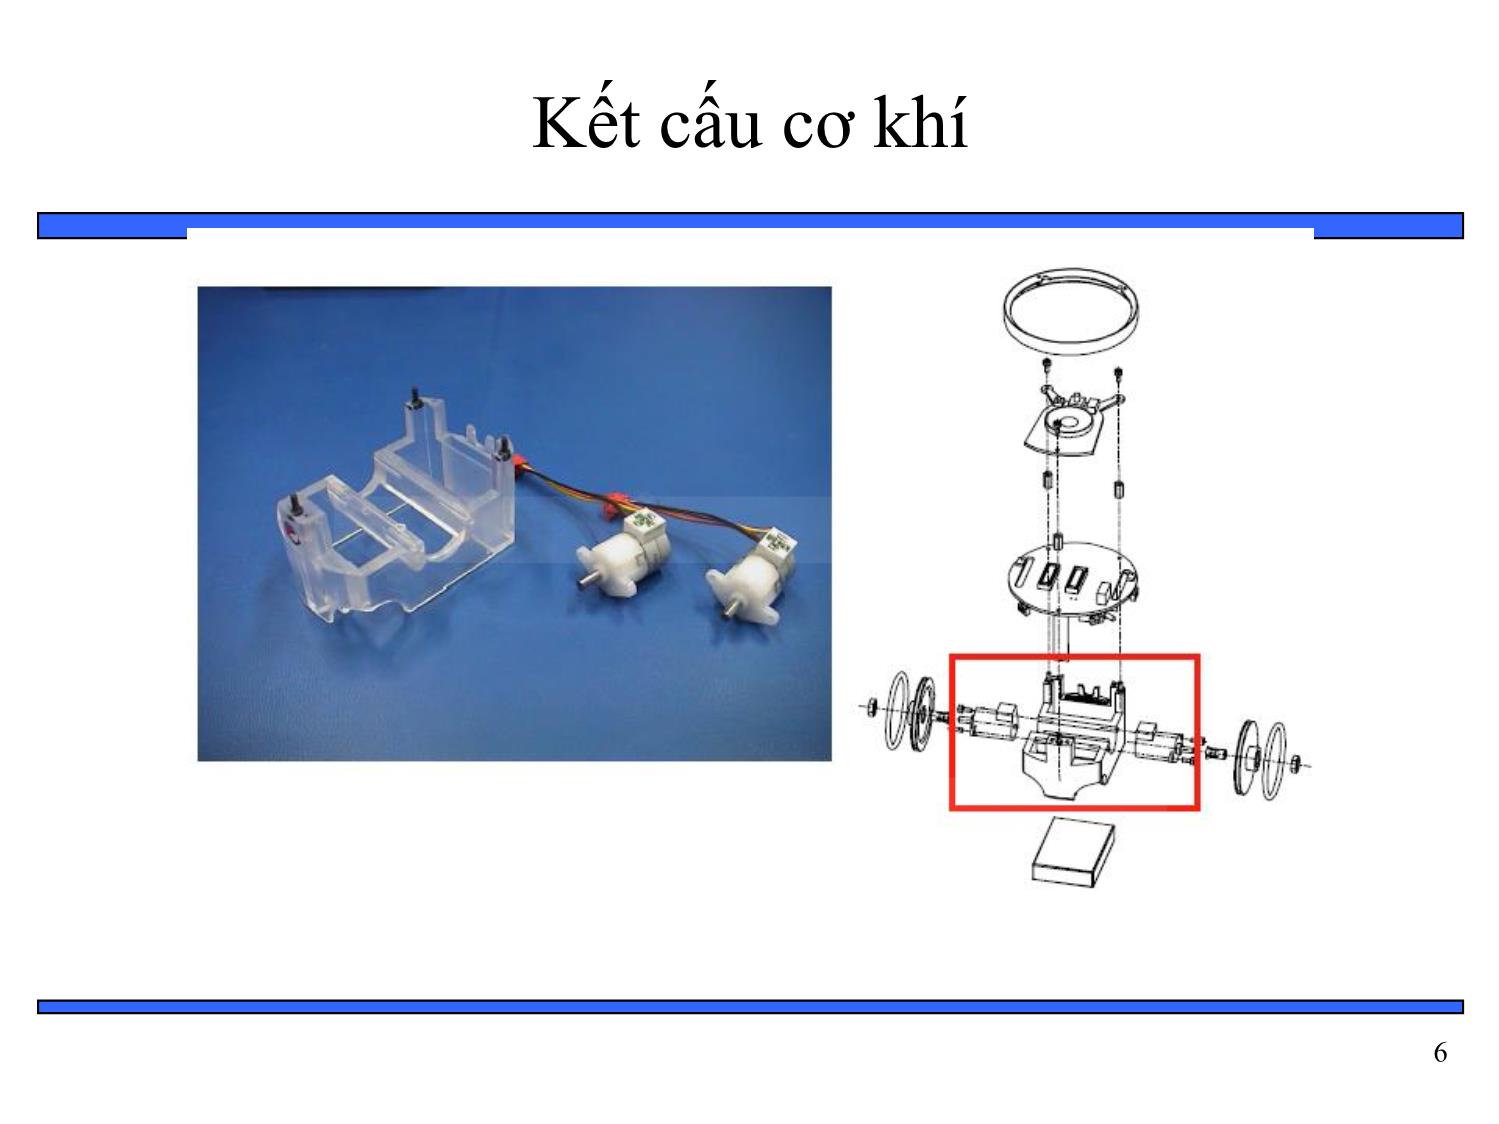 Bài giảng Thiết kế hệ thống nhúng - Chương 6: Tổng hợp phần cứng và phần mềm - Bài 10: Ví dụ về hệ thống nhúng mobile robot trang 6